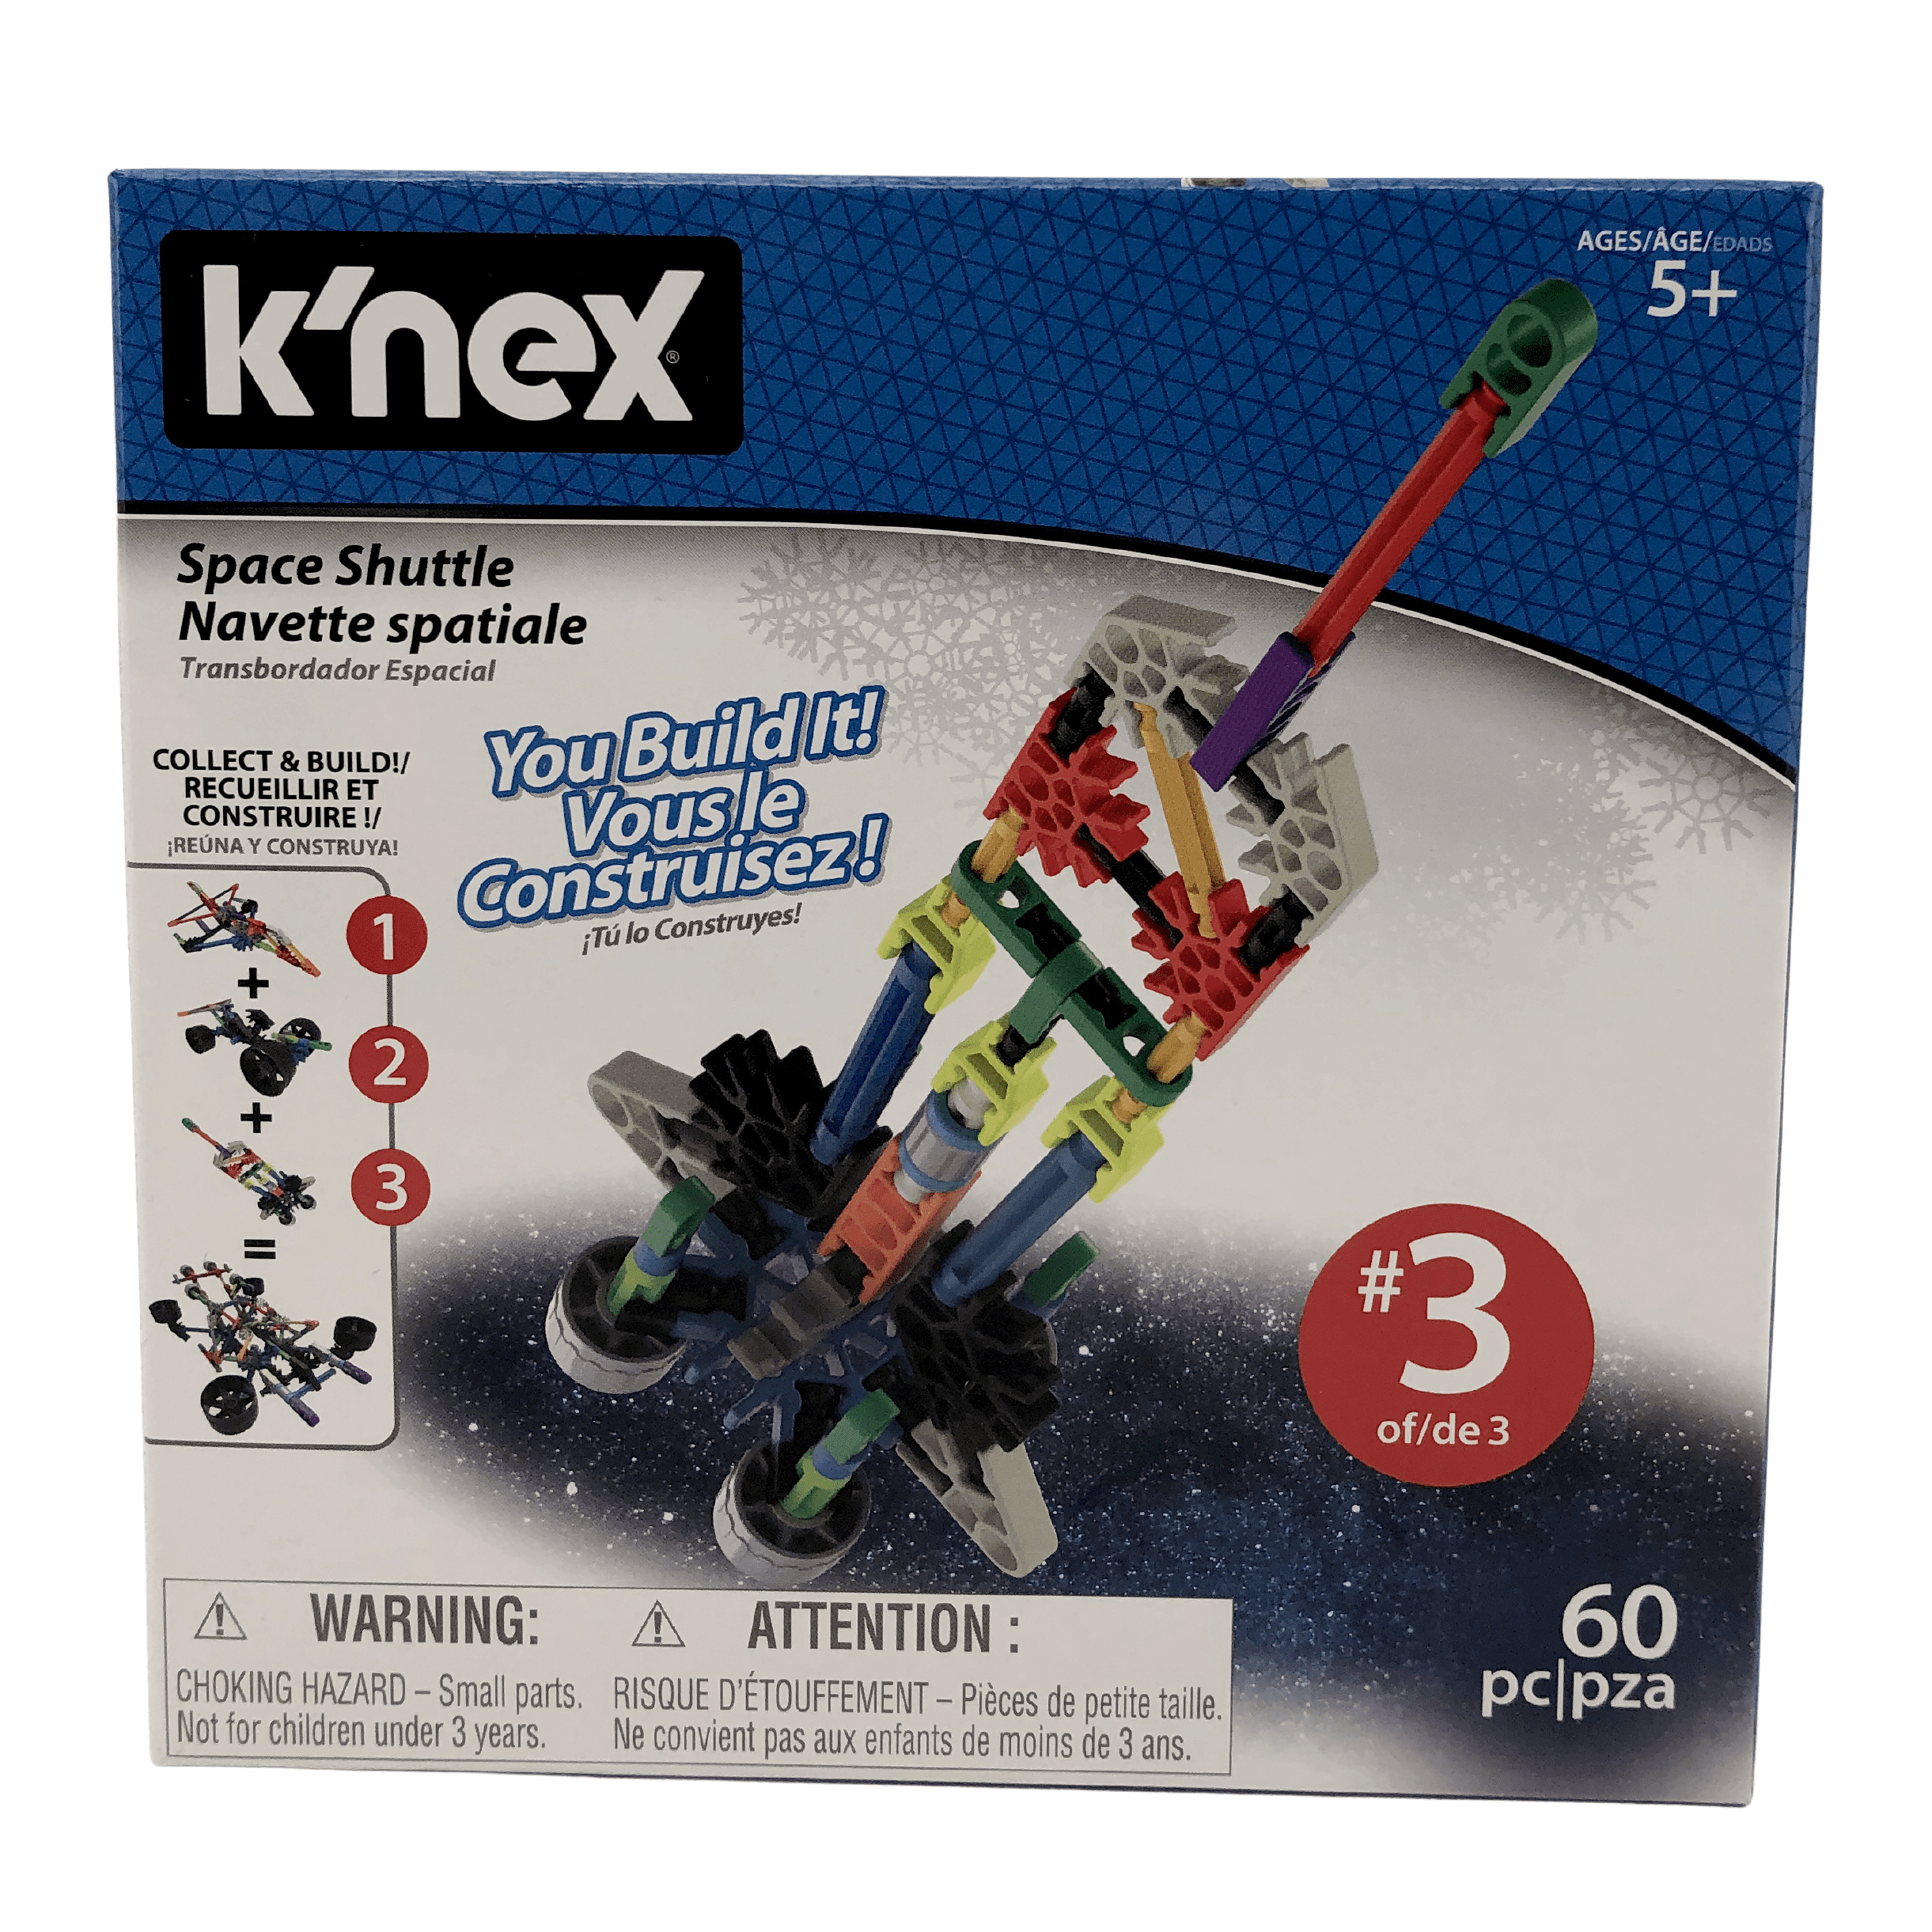 K'nex Mini STEM TOY Building Kit / Space Shuttle / 60 Piece / Ages 5+